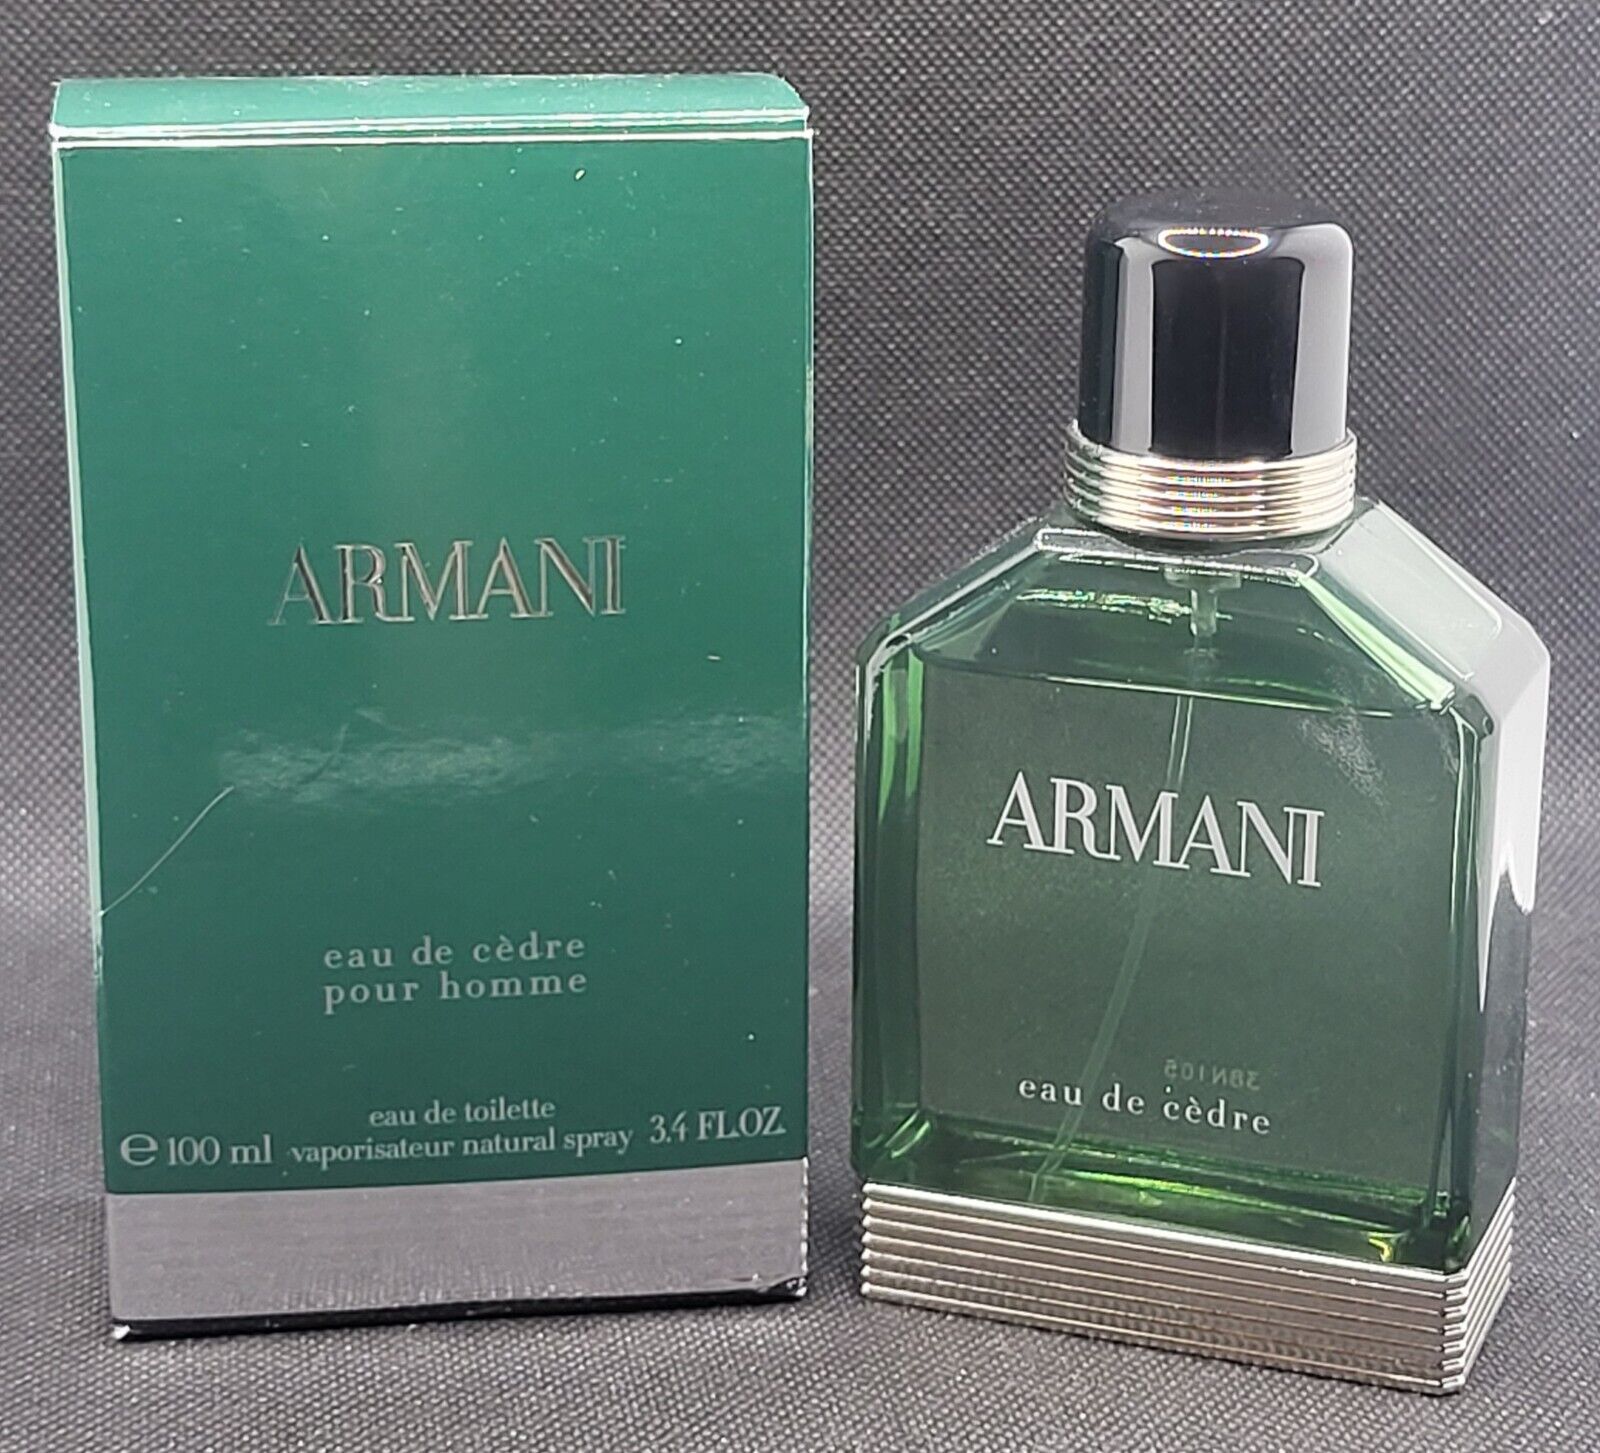 Armani Eau De Cedre - EdT - 3.4 oz, 100 ml Bottle - Almost Full